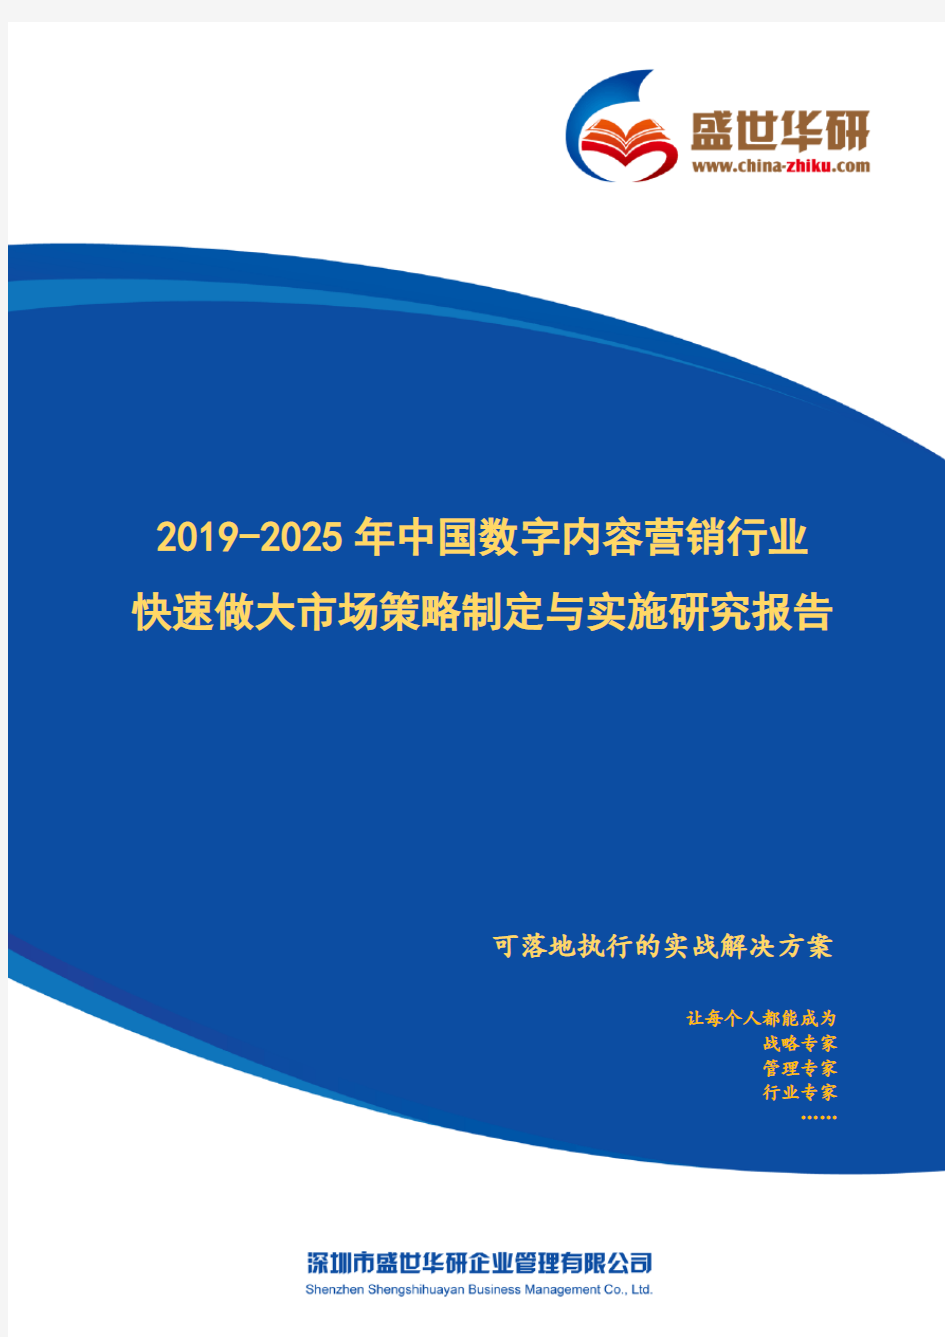 【完整版】2019-2025年中国数字内容营销行业快速做大市场规模策略制定与实施研究报告